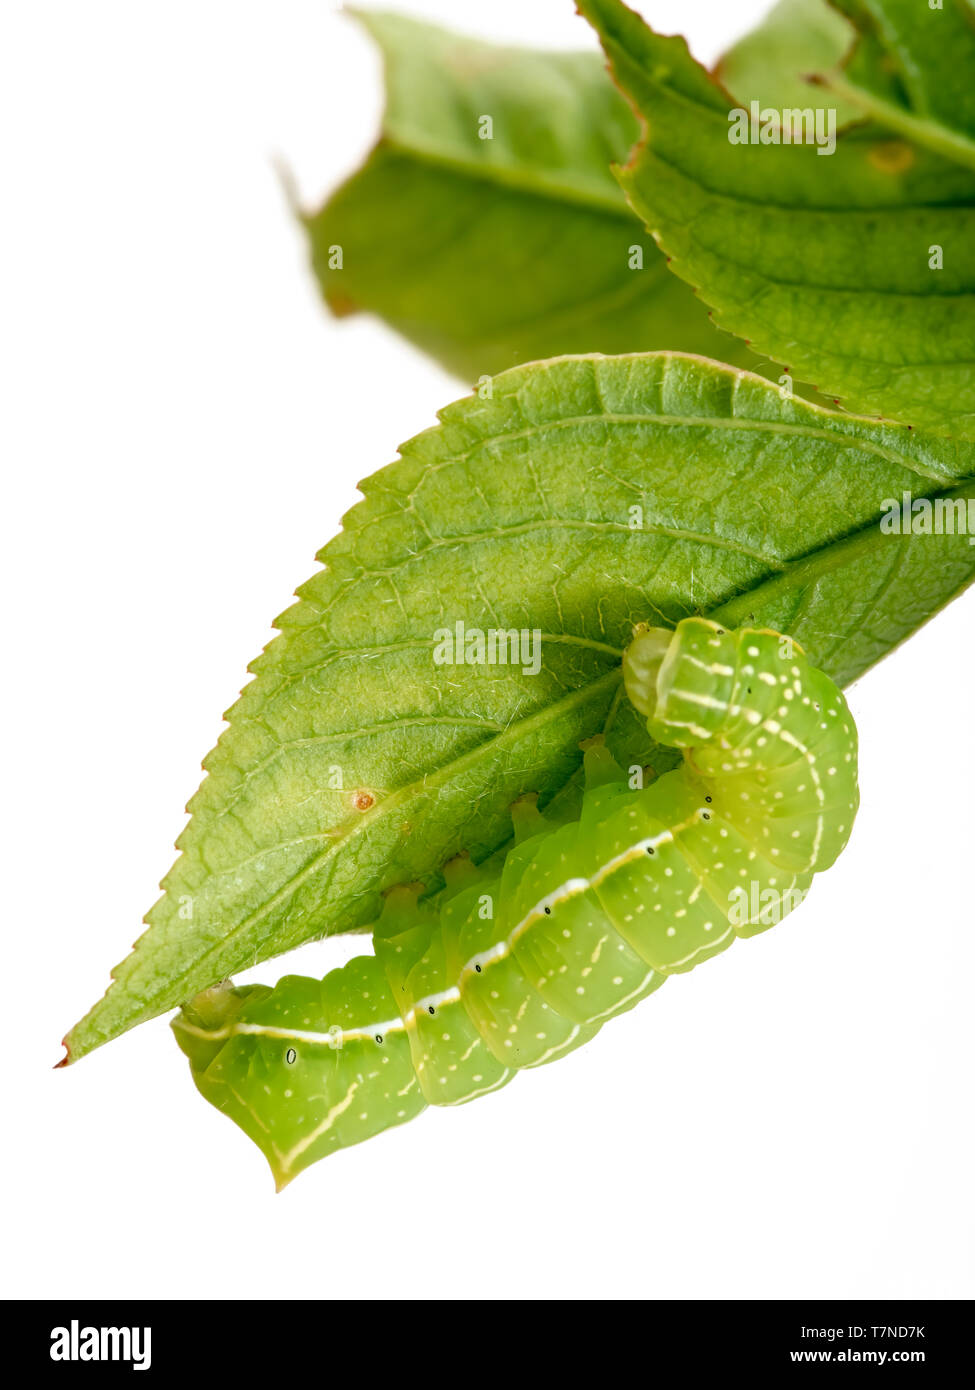 Caterpillar verde, blanco y amarillo con manchas negras. Amphipyra pyramidoides, cobre subalares larva de polilla, principios instar. En la hoja, aislado en blanco Foto de stock